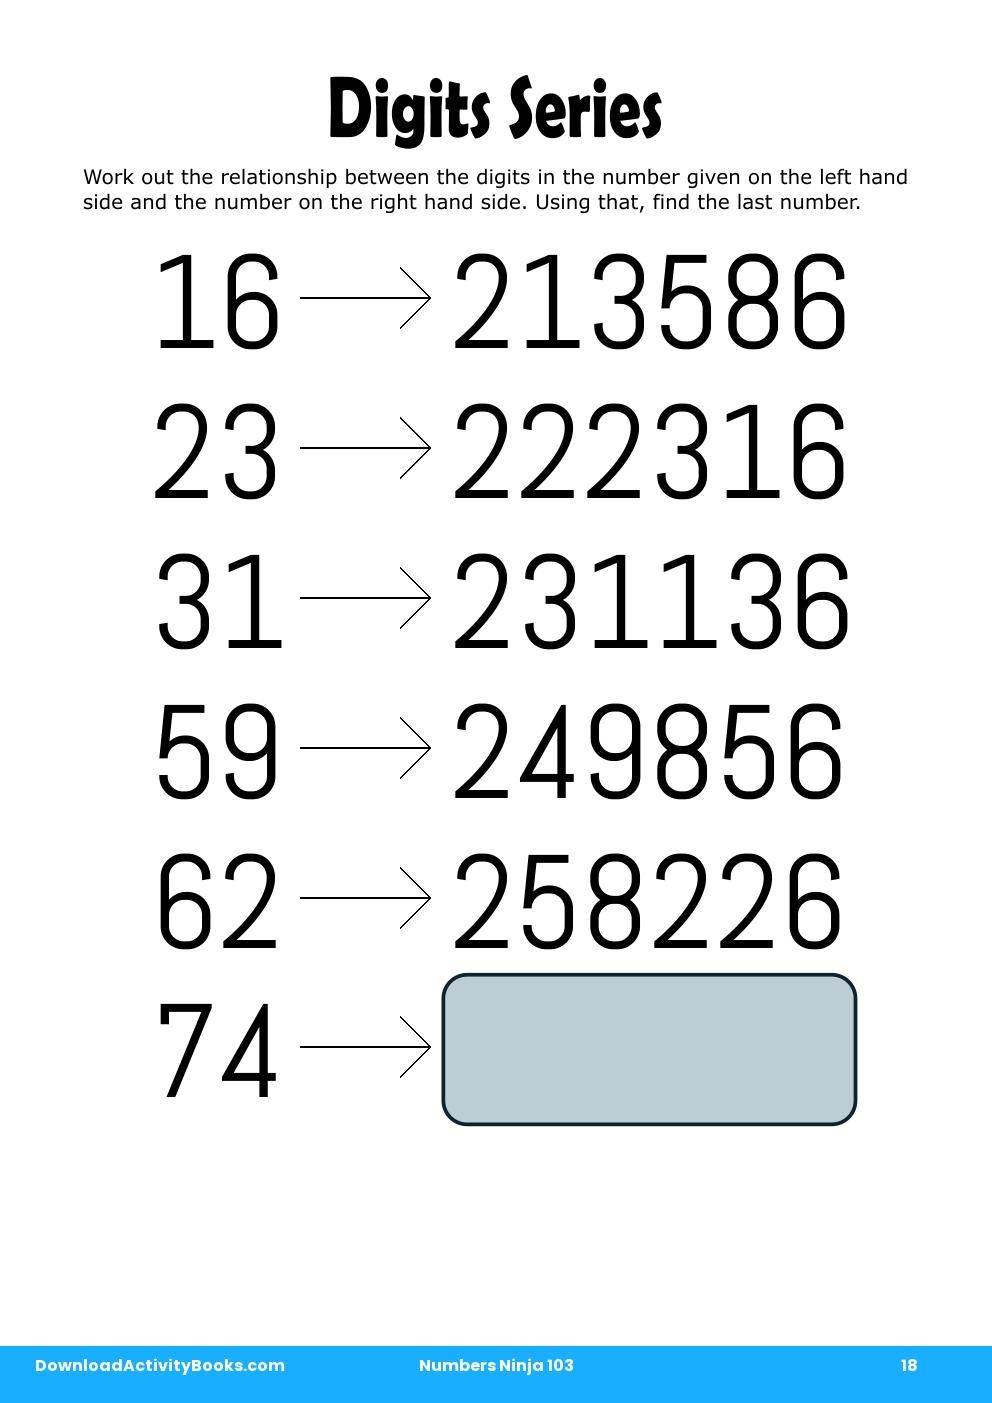 Digits Series in Numbers Ninja 103